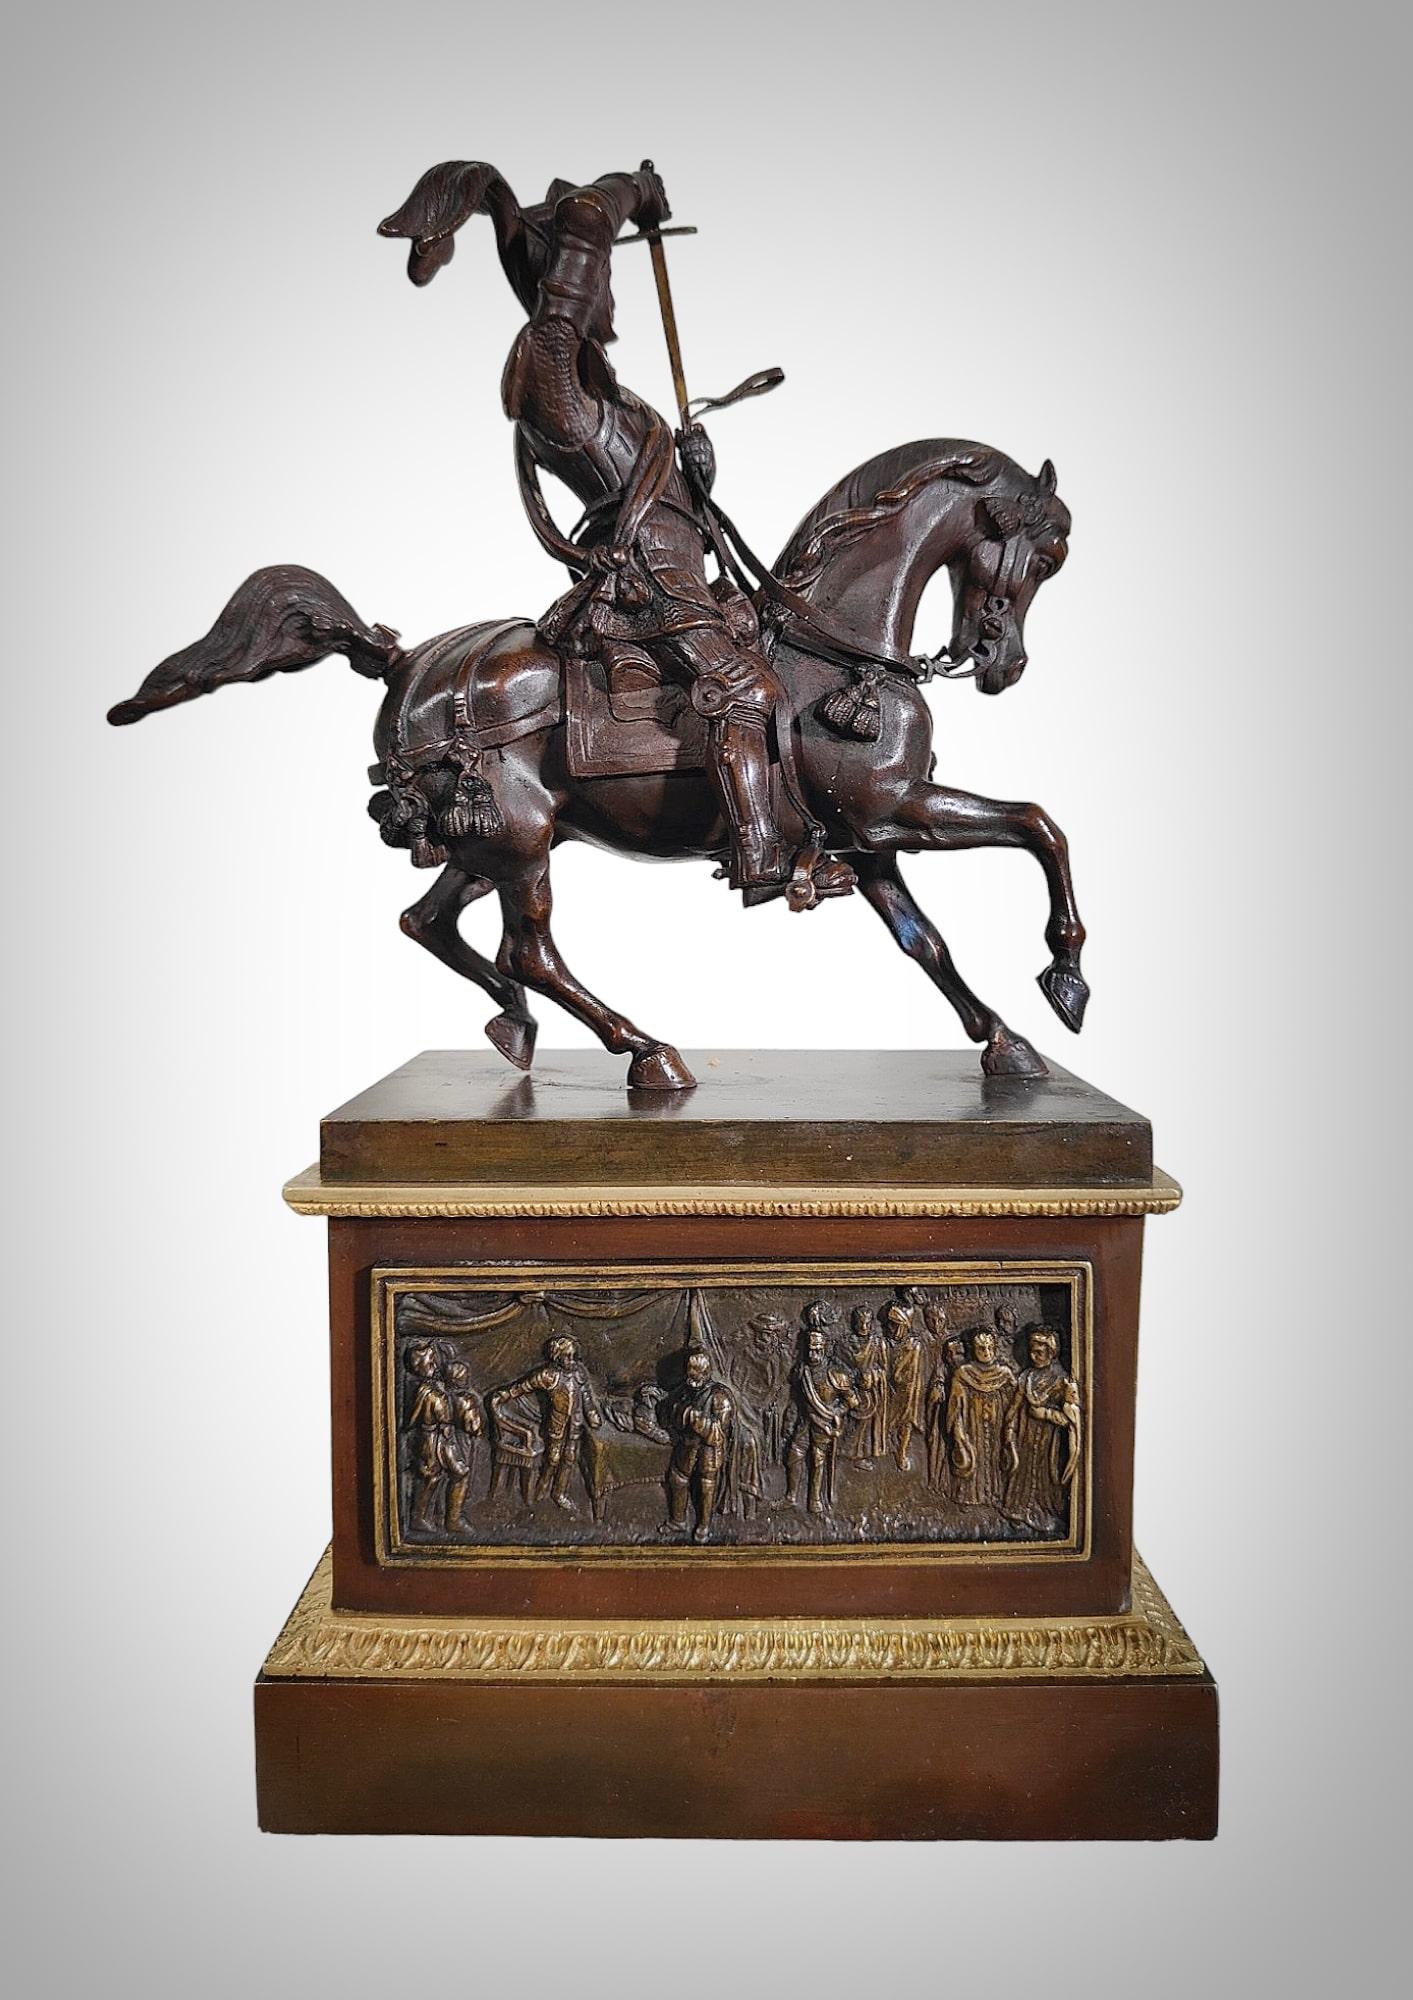 Découvrez un véritable joyau de la sculpture du XIXe siècle avec cette spectaculaire statue en bronze du duc de Savoy, chef-d'œuvre du célèbre sculpteur Carlo Marochetti !

Imaginez la présence imposante de ce noble personnage, monté sur un